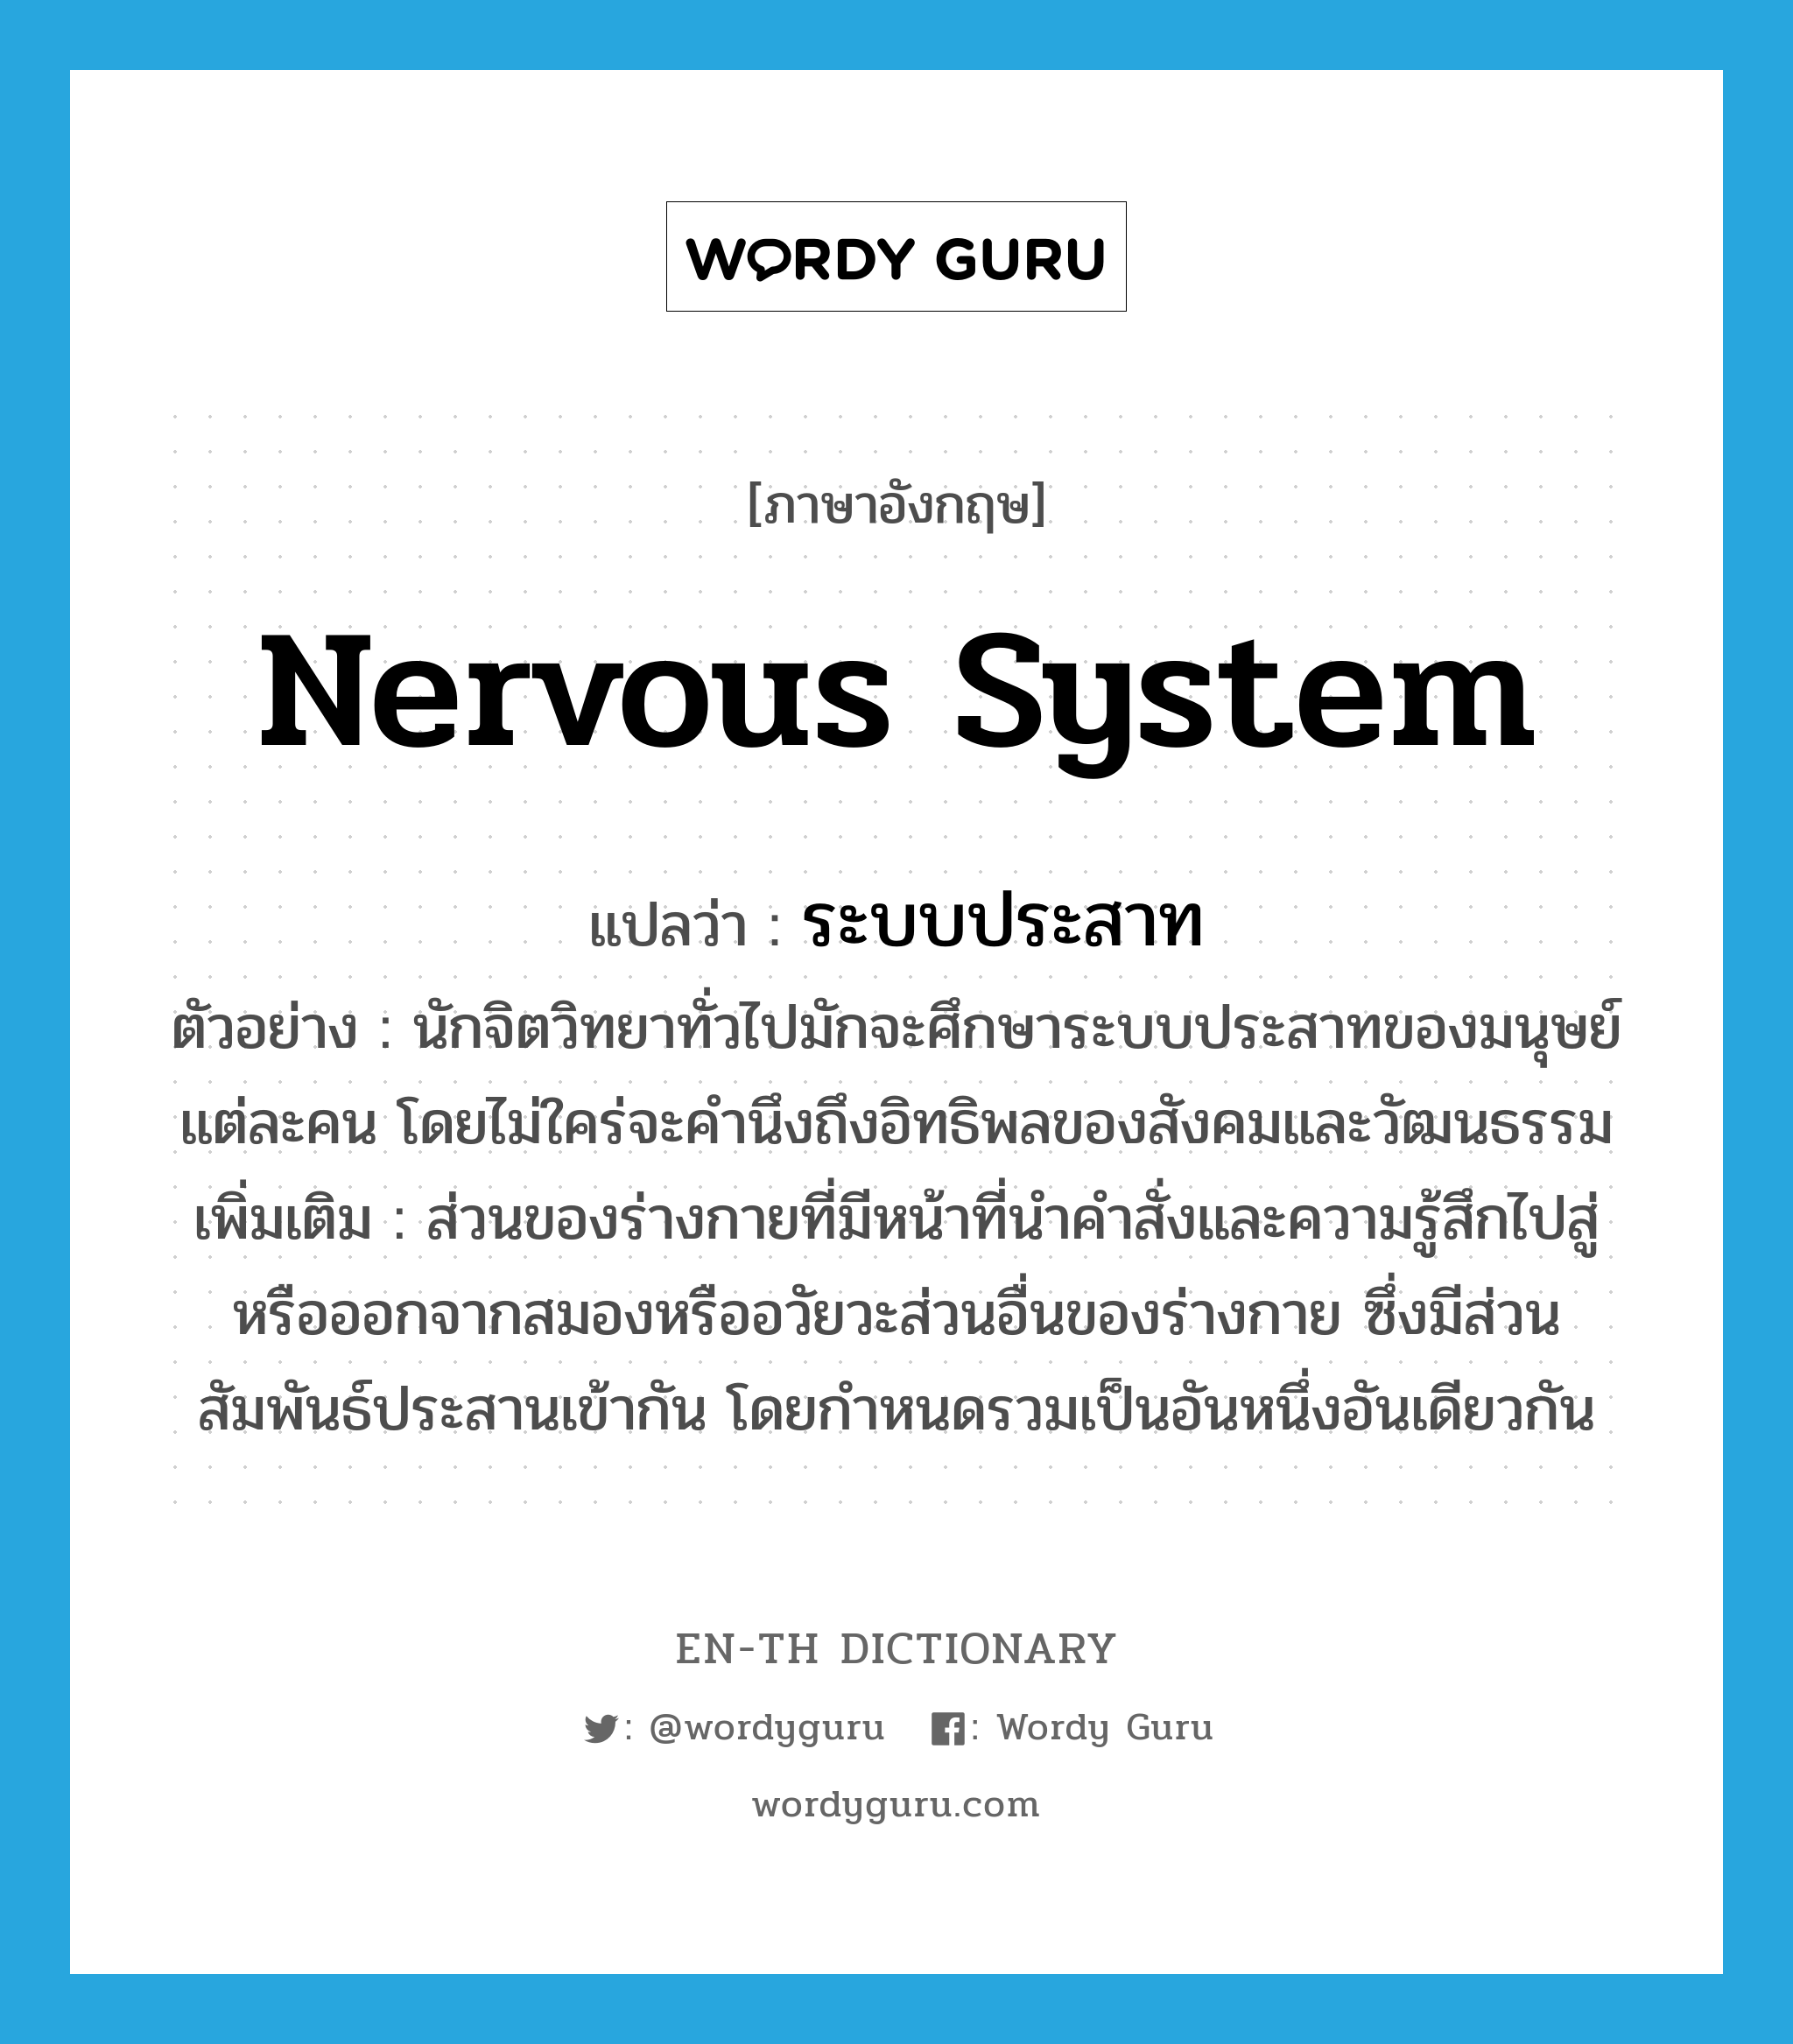 nervous system แปลว่า?, คำศัพท์ภาษาอังกฤษ nervous system แปลว่า ระบบประสาท ประเภท N ตัวอย่าง นักจิตวิทยาทั่วไปมักจะศึกษาระบบประสาทของมนุษย์แต่ละคน โดยไม่ใคร่จะคำนึงถึงอิทธิพลของสังคมและวัฒนธรรม เพิ่มเติม ส่วนของร่างกายที่มีหน้าที่นำคำสั่งและความรู้สึกไปสู่หรือออกจากสมองหรืออวัยวะส่วนอื่นของร่างกาย ซึ่งมีส่วนสัมพันธ์ประสานเข้ากัน โดยกำหนดรวมเป็นอันหนึ่งอันเดียวกัน หมวด N